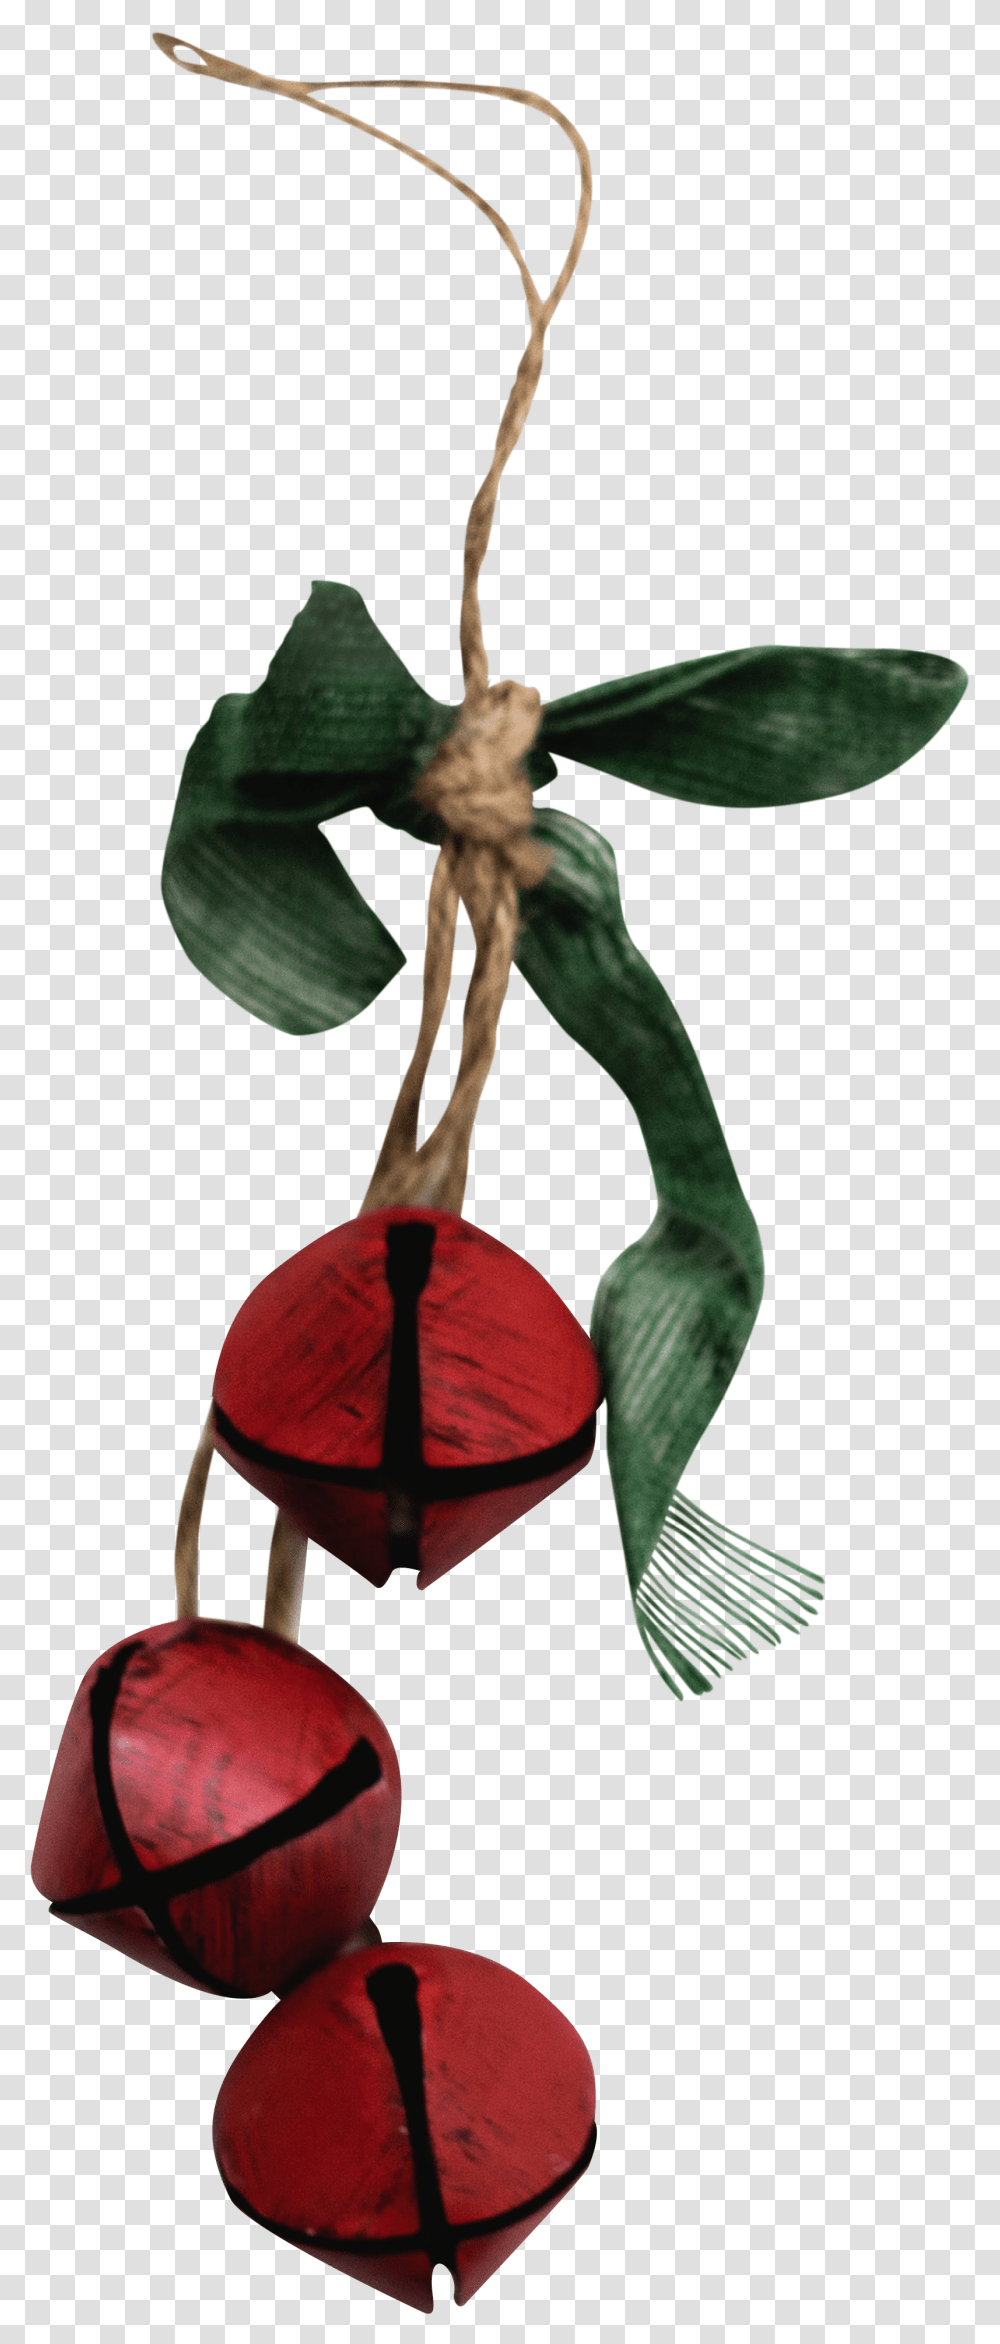 Red Bell Decor - For Free Laceleaf, Plant, Flower, Blossom, Araceae Transparent Png